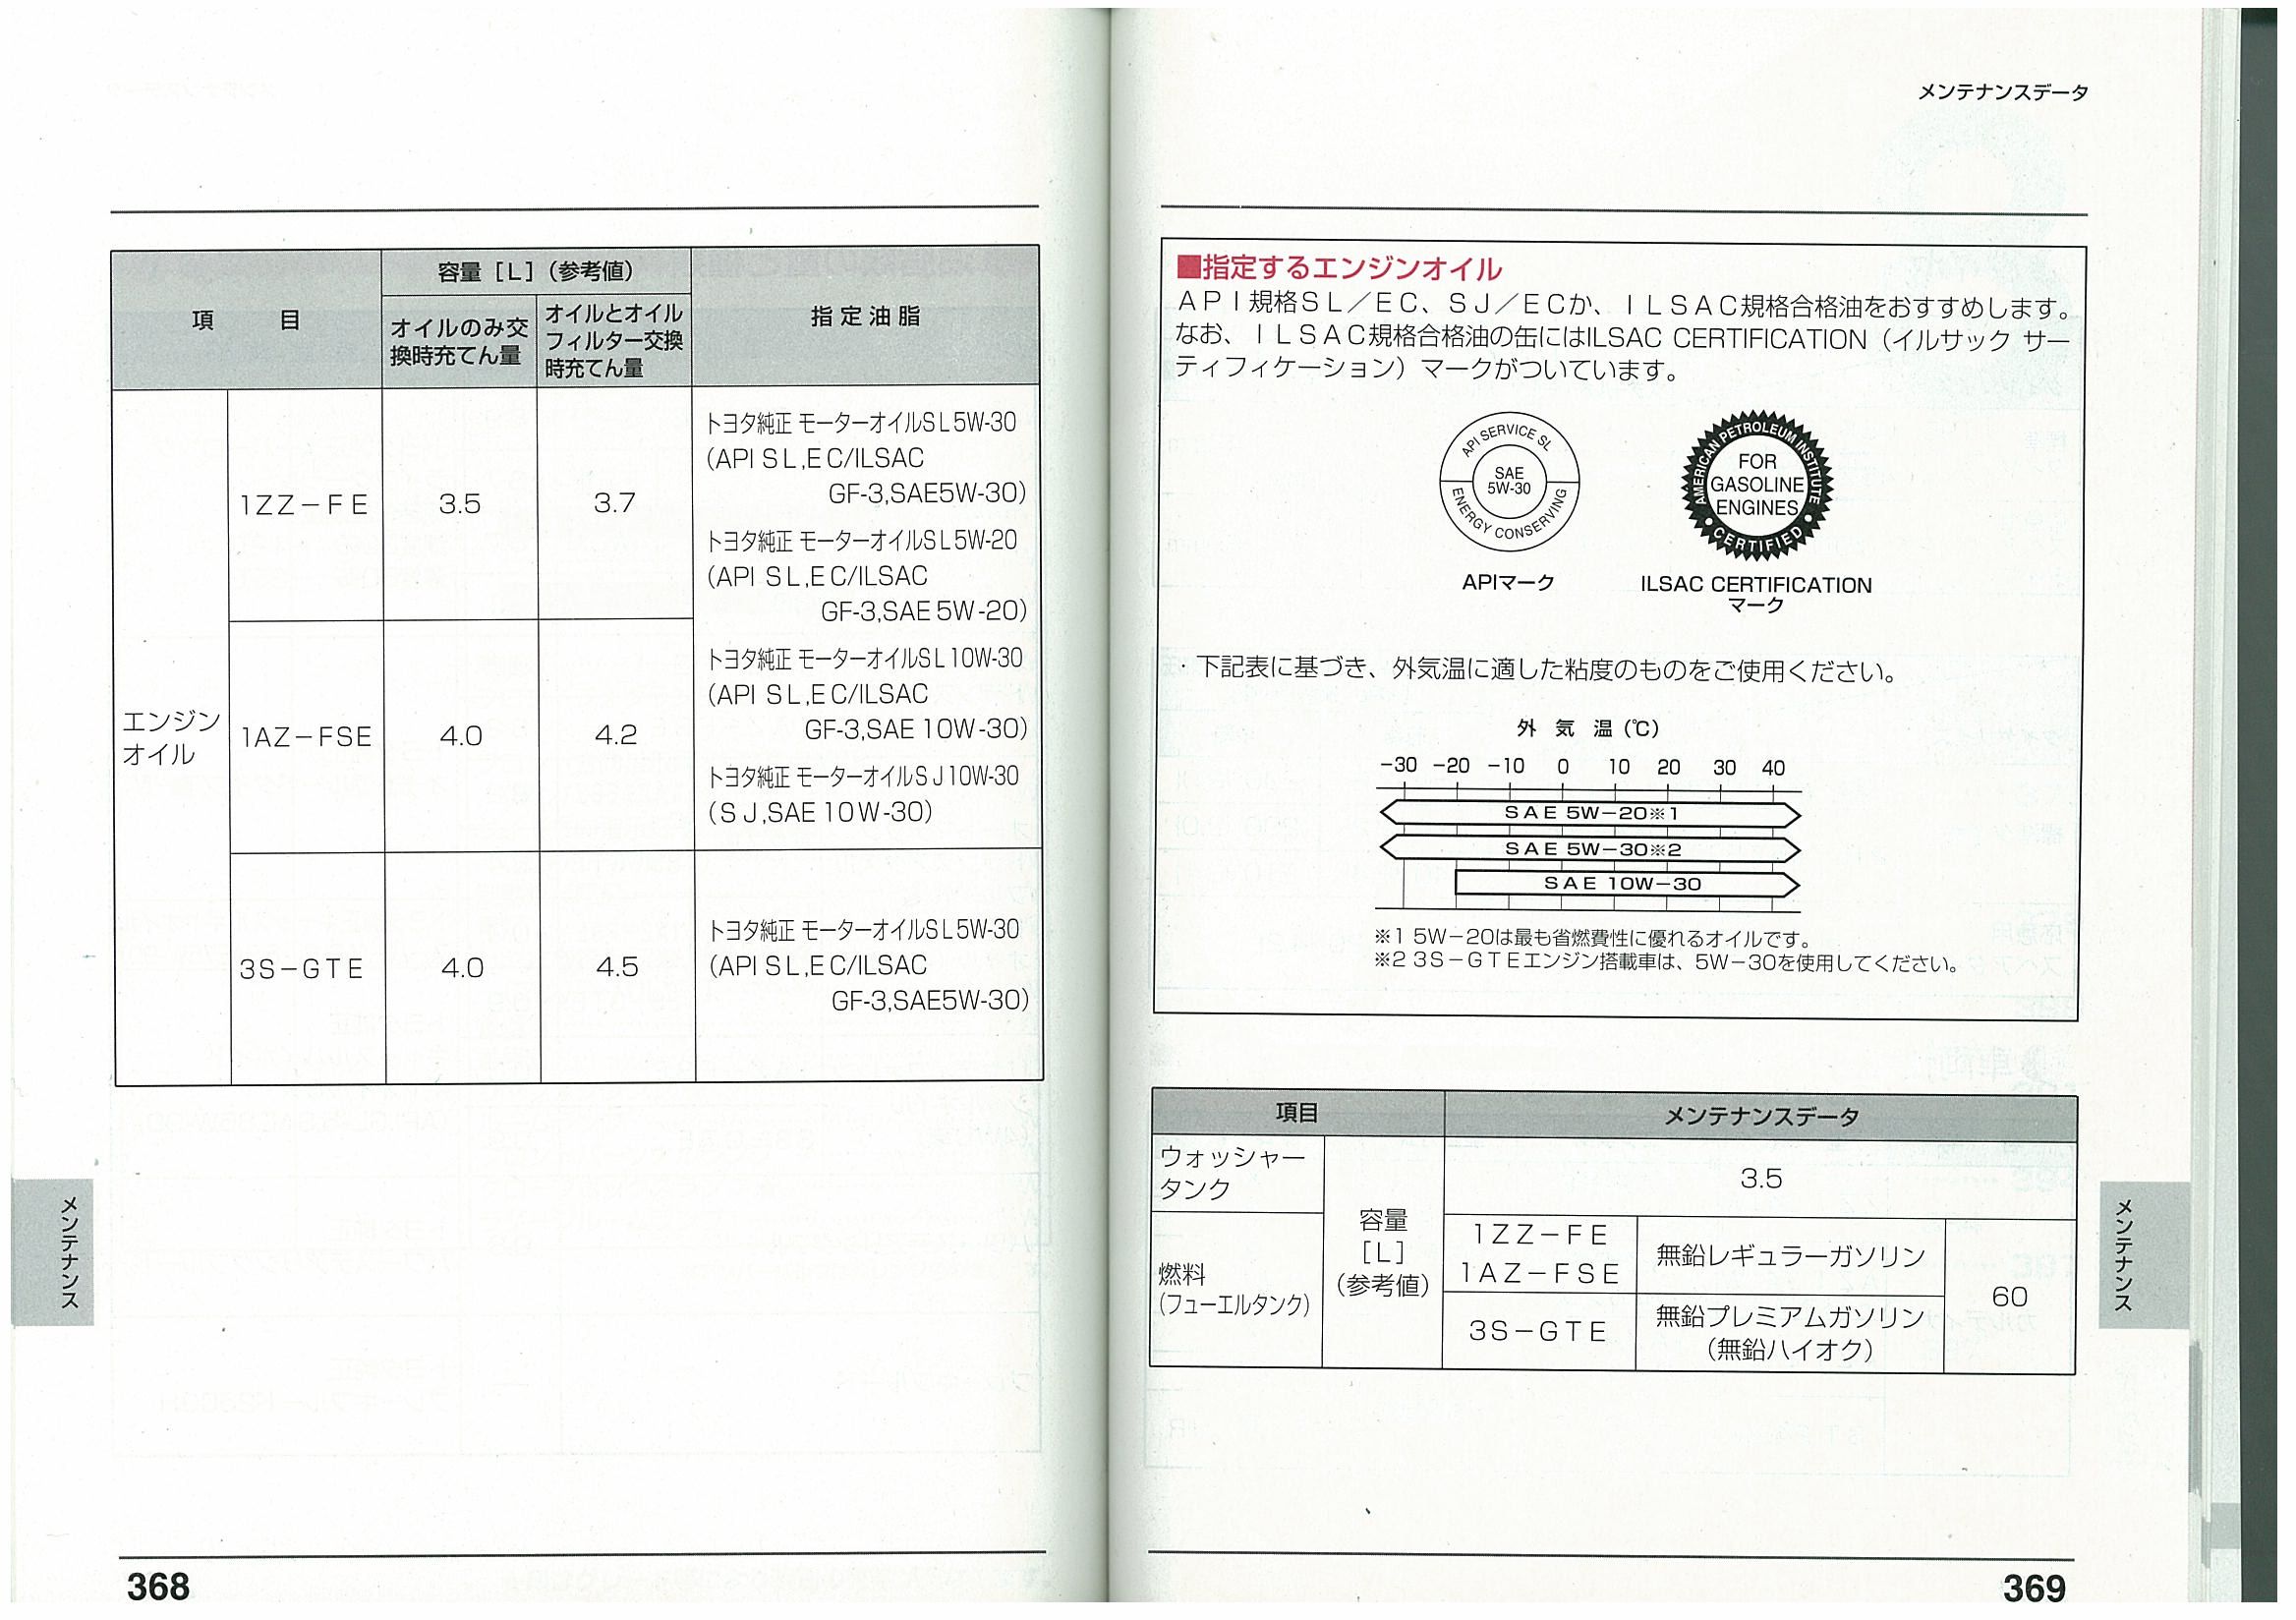 1az fe масло. Допуски моторных масел для 1az-FSE. Допуски масла Toyota rav4 2.0. Двигатель 1az-Fe моторное масло допуск. 1az-FSE масло по мануалу.